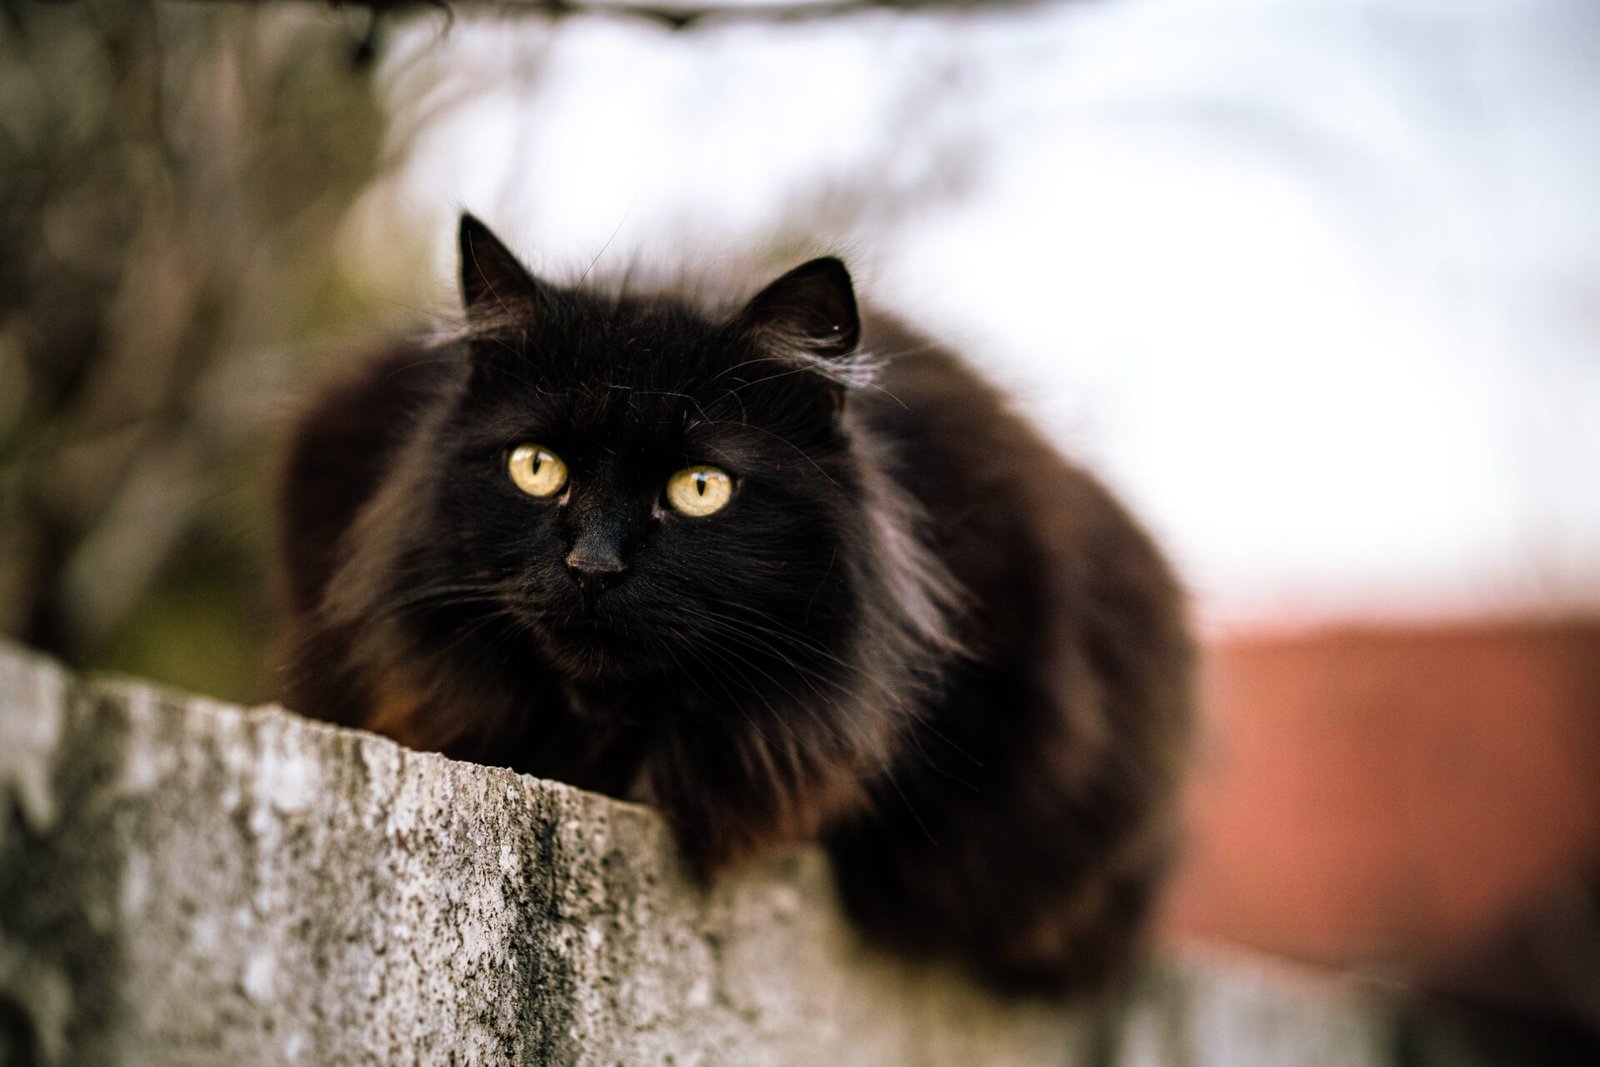 Black Persian cats